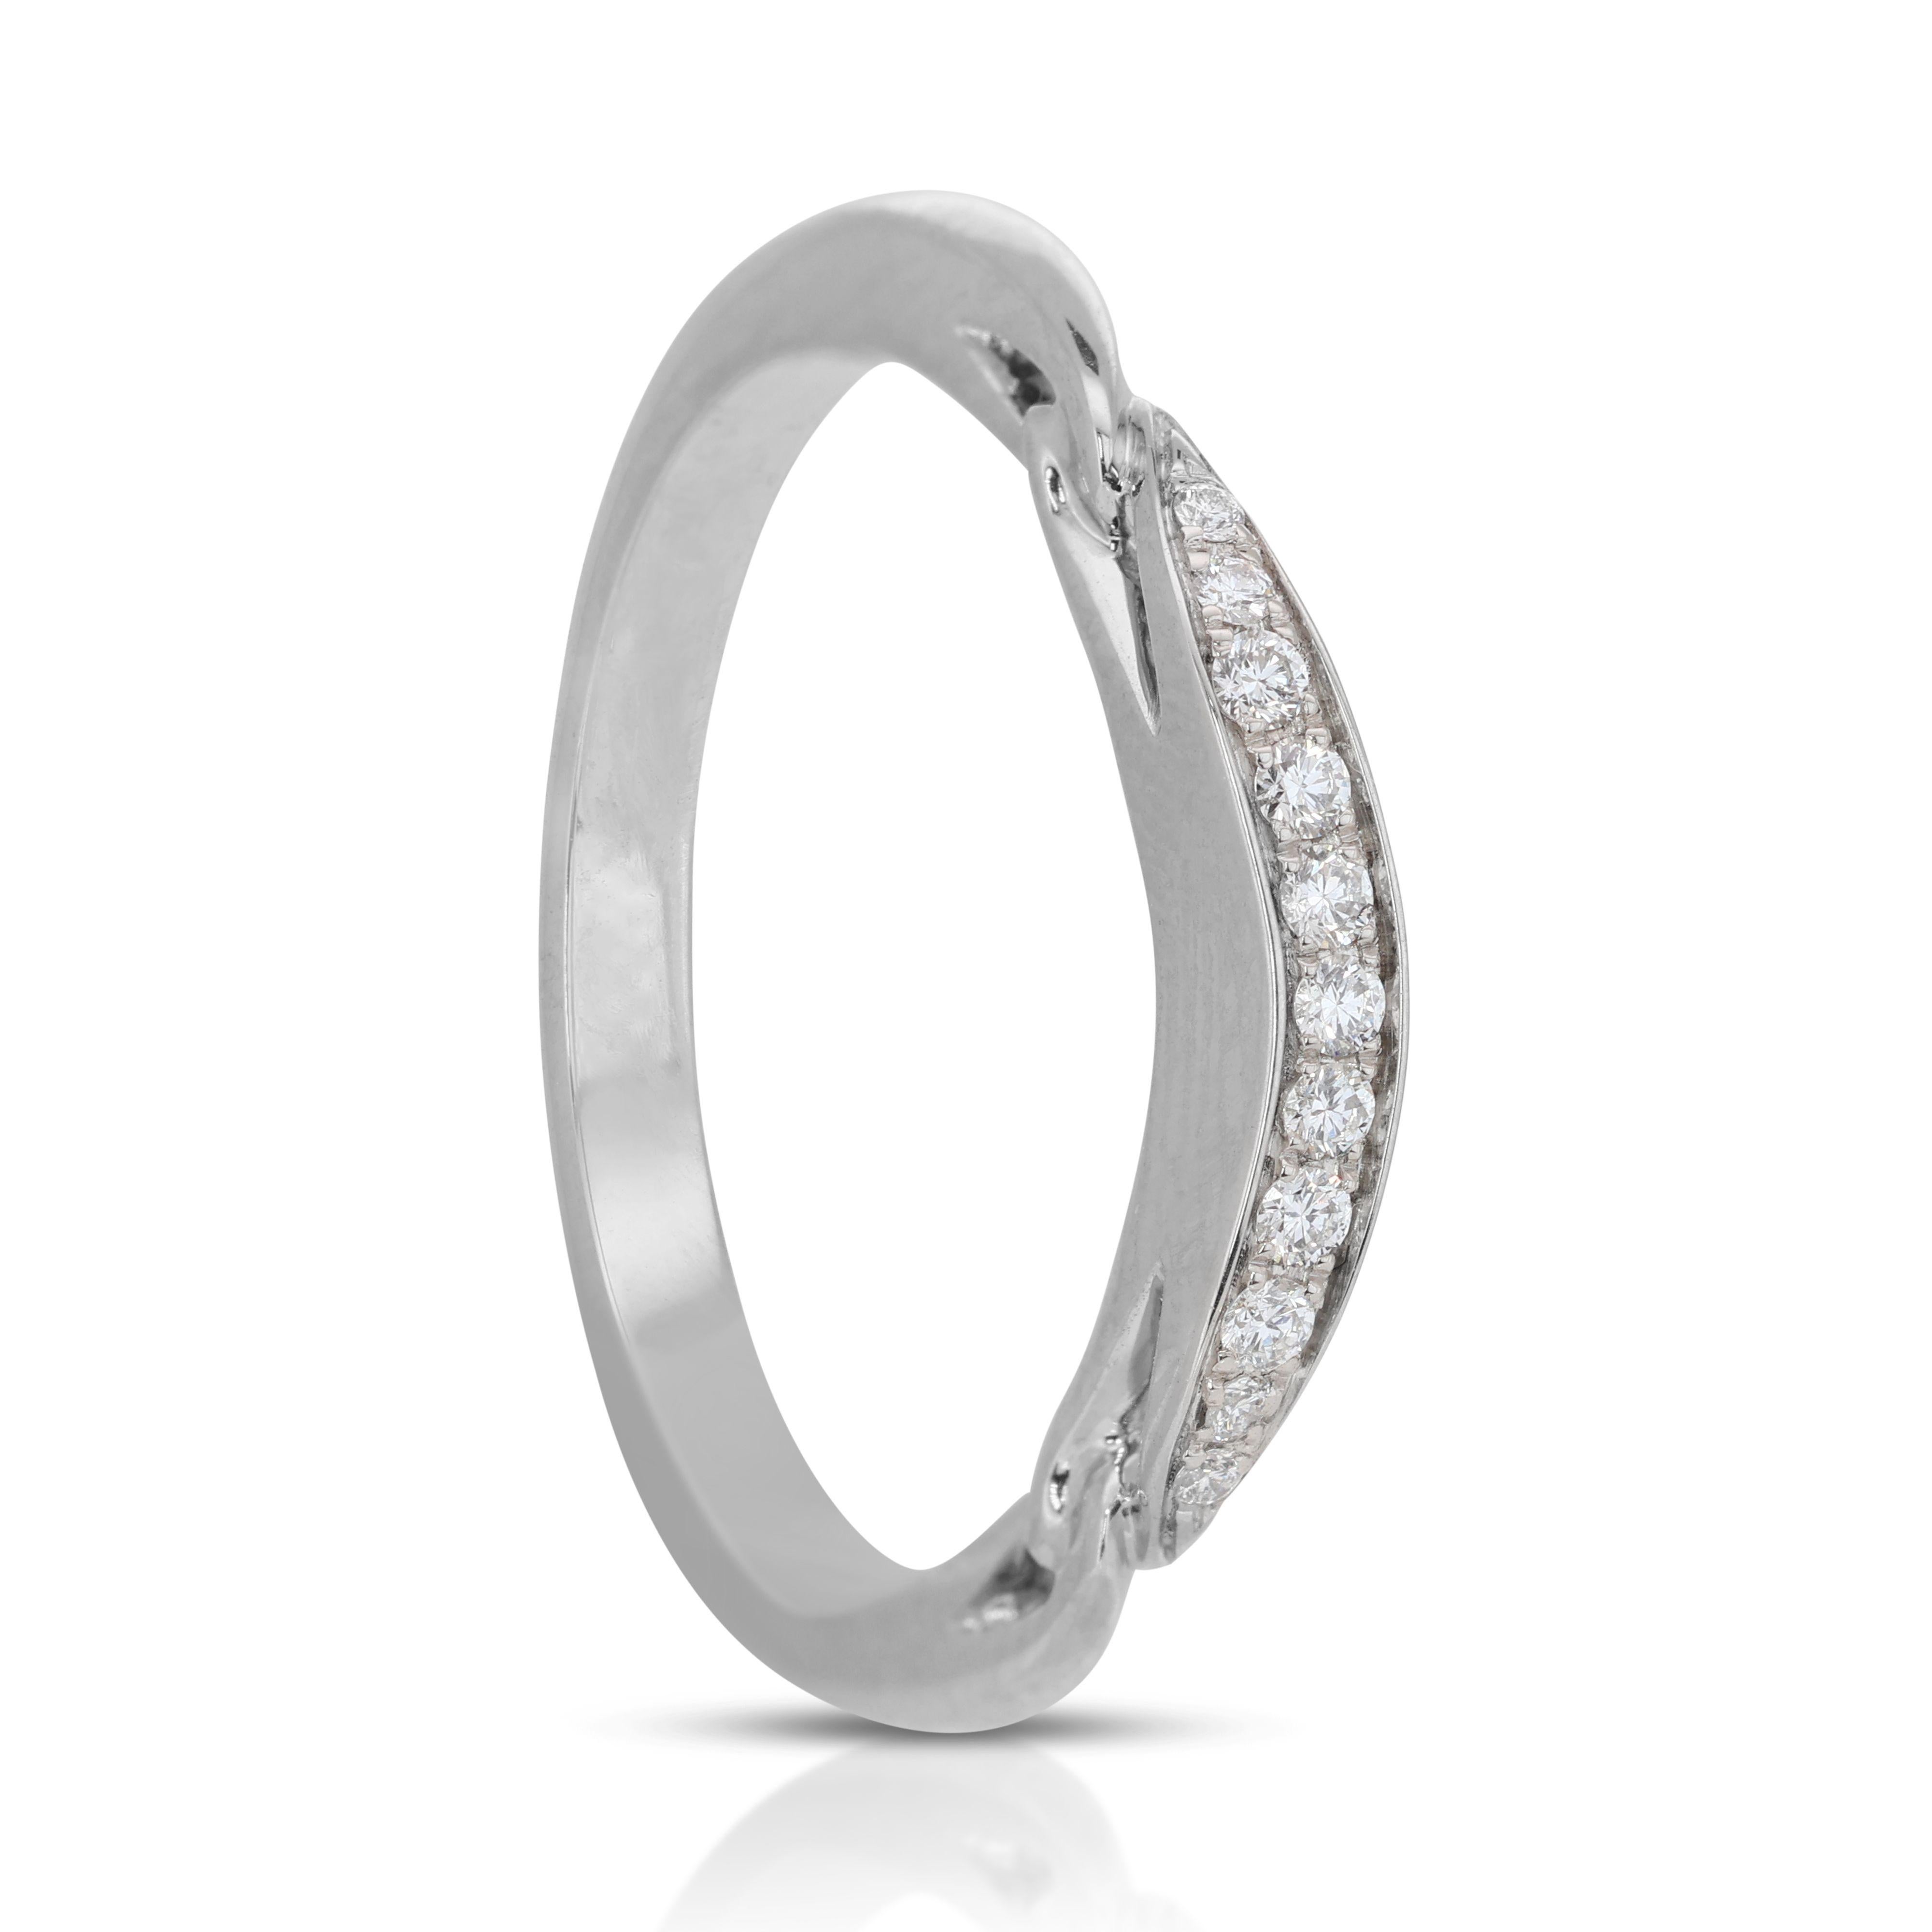 Ravishing 18k White Gold Bvlgari Pave Ring with 0.40 Carat Natural Diamonds 1